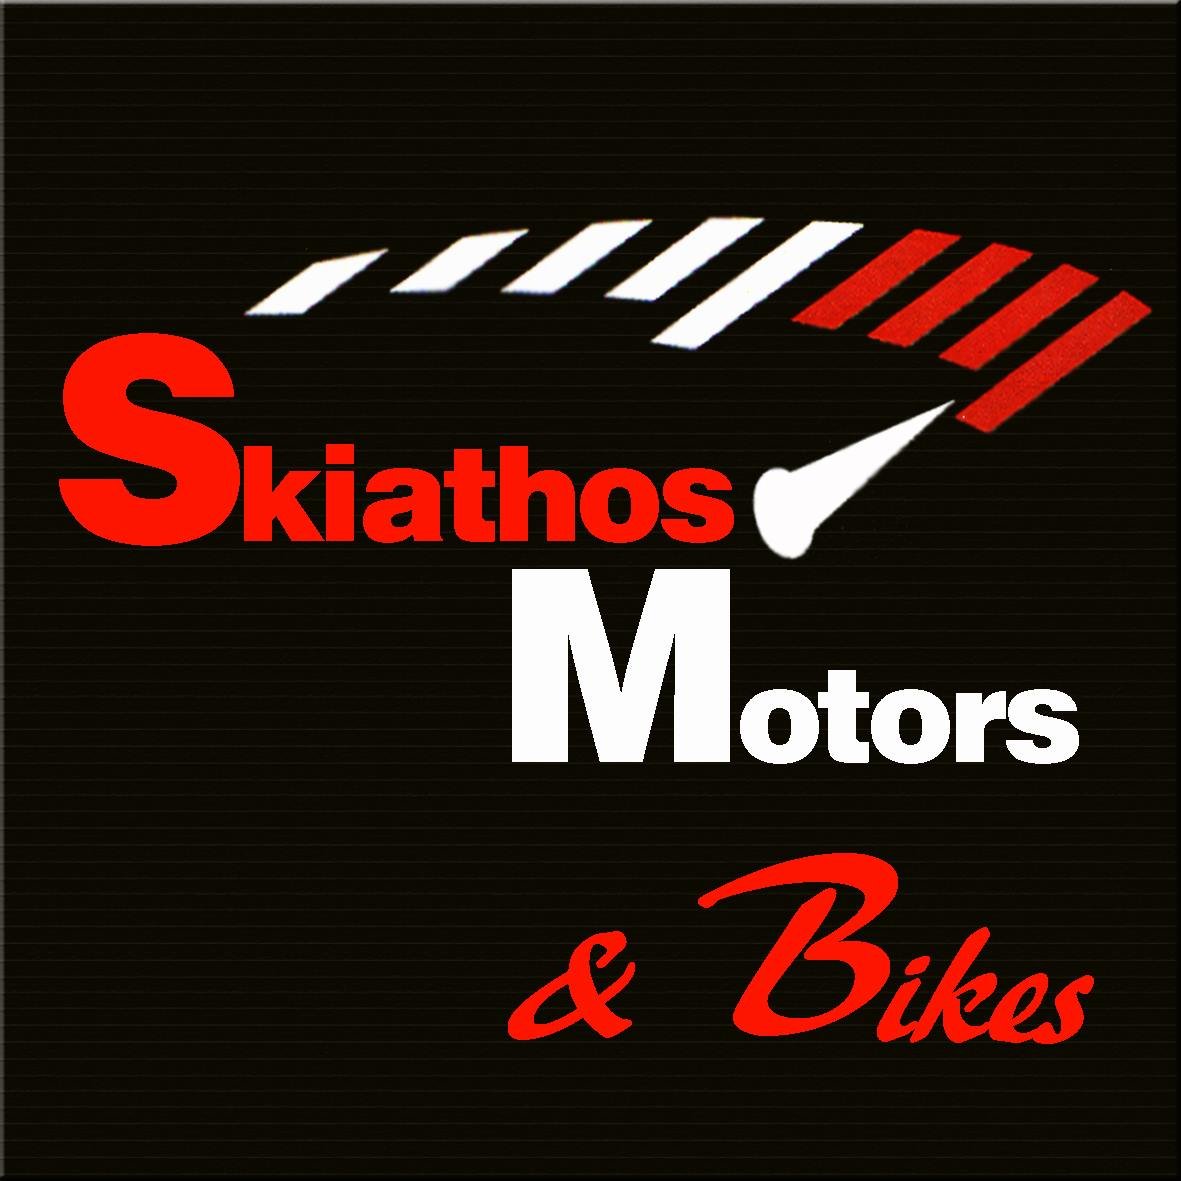 SKIATHOS MOTORS & BIKES